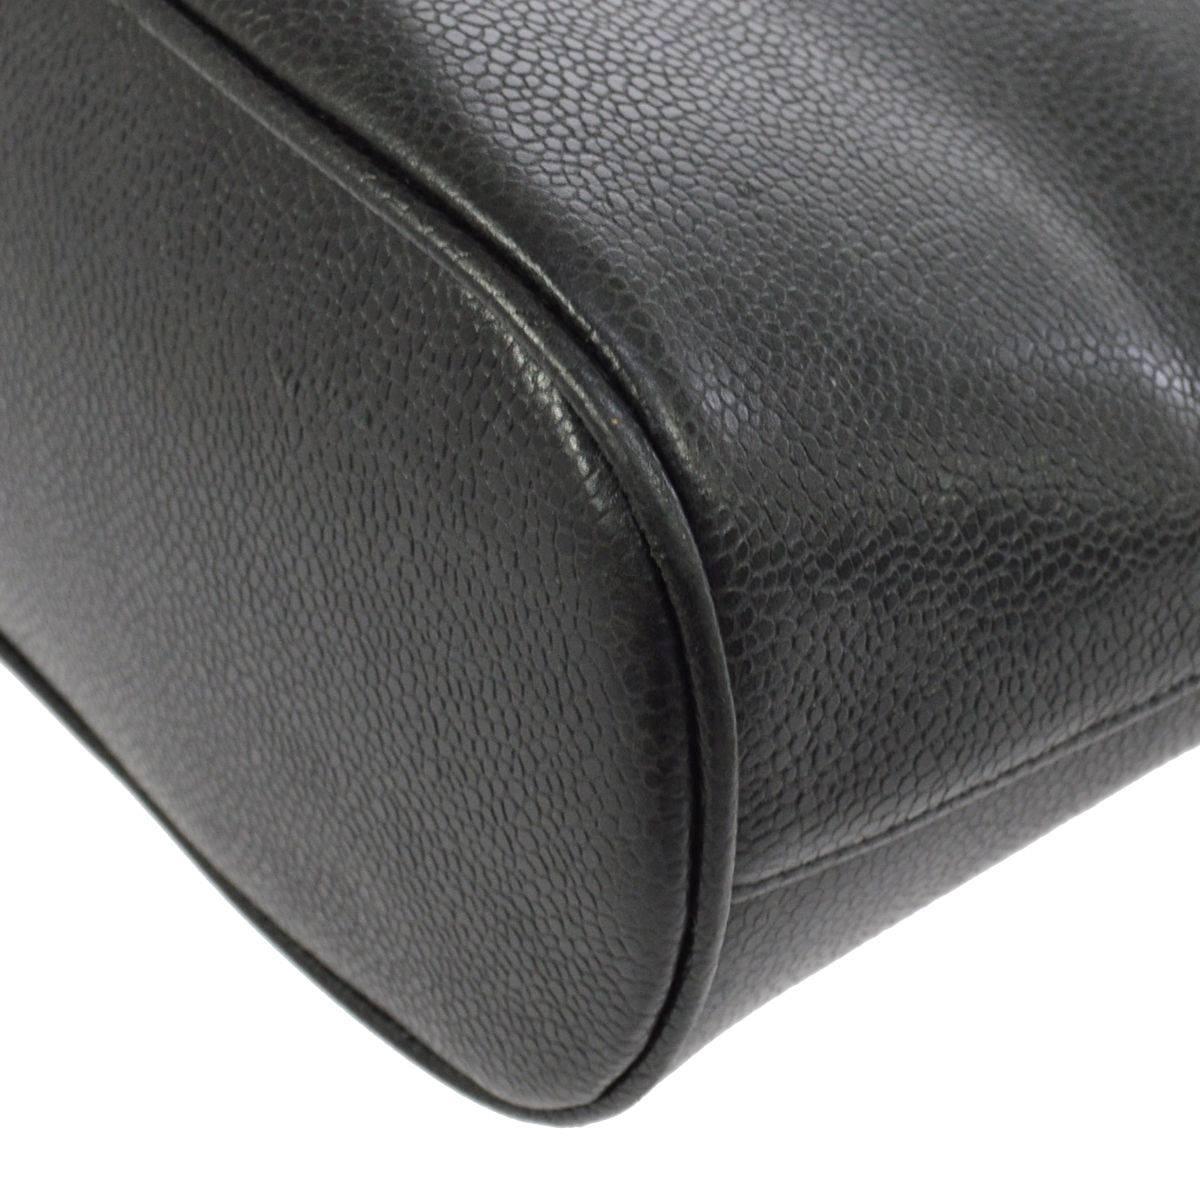 Women's Chanel Black Leather Large Carryall Weekender Travel Tote Shoulder Bag